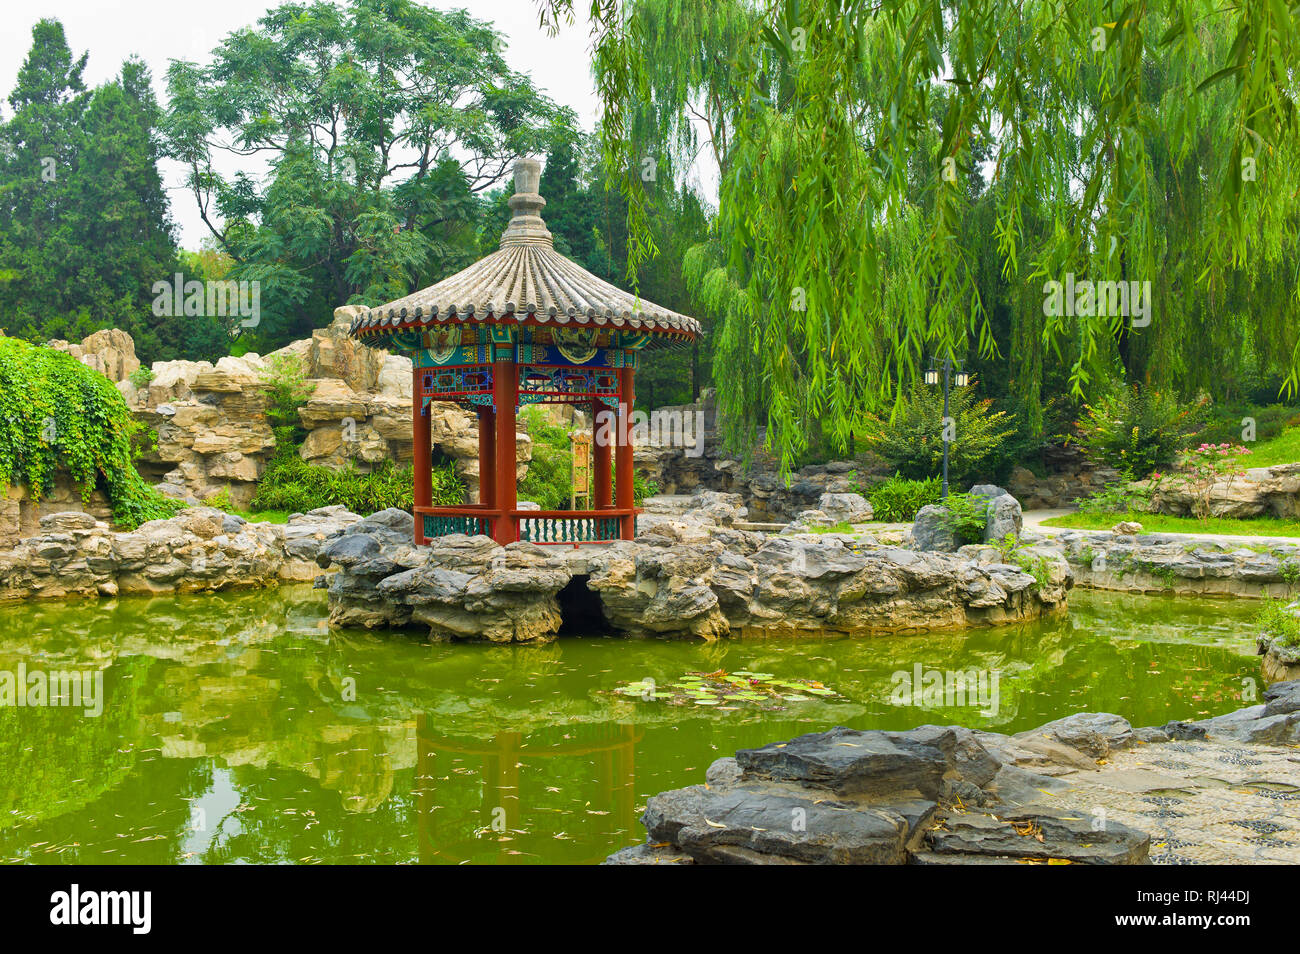 Chinese garden, Ritan Park, Beijing, China Stock Photo